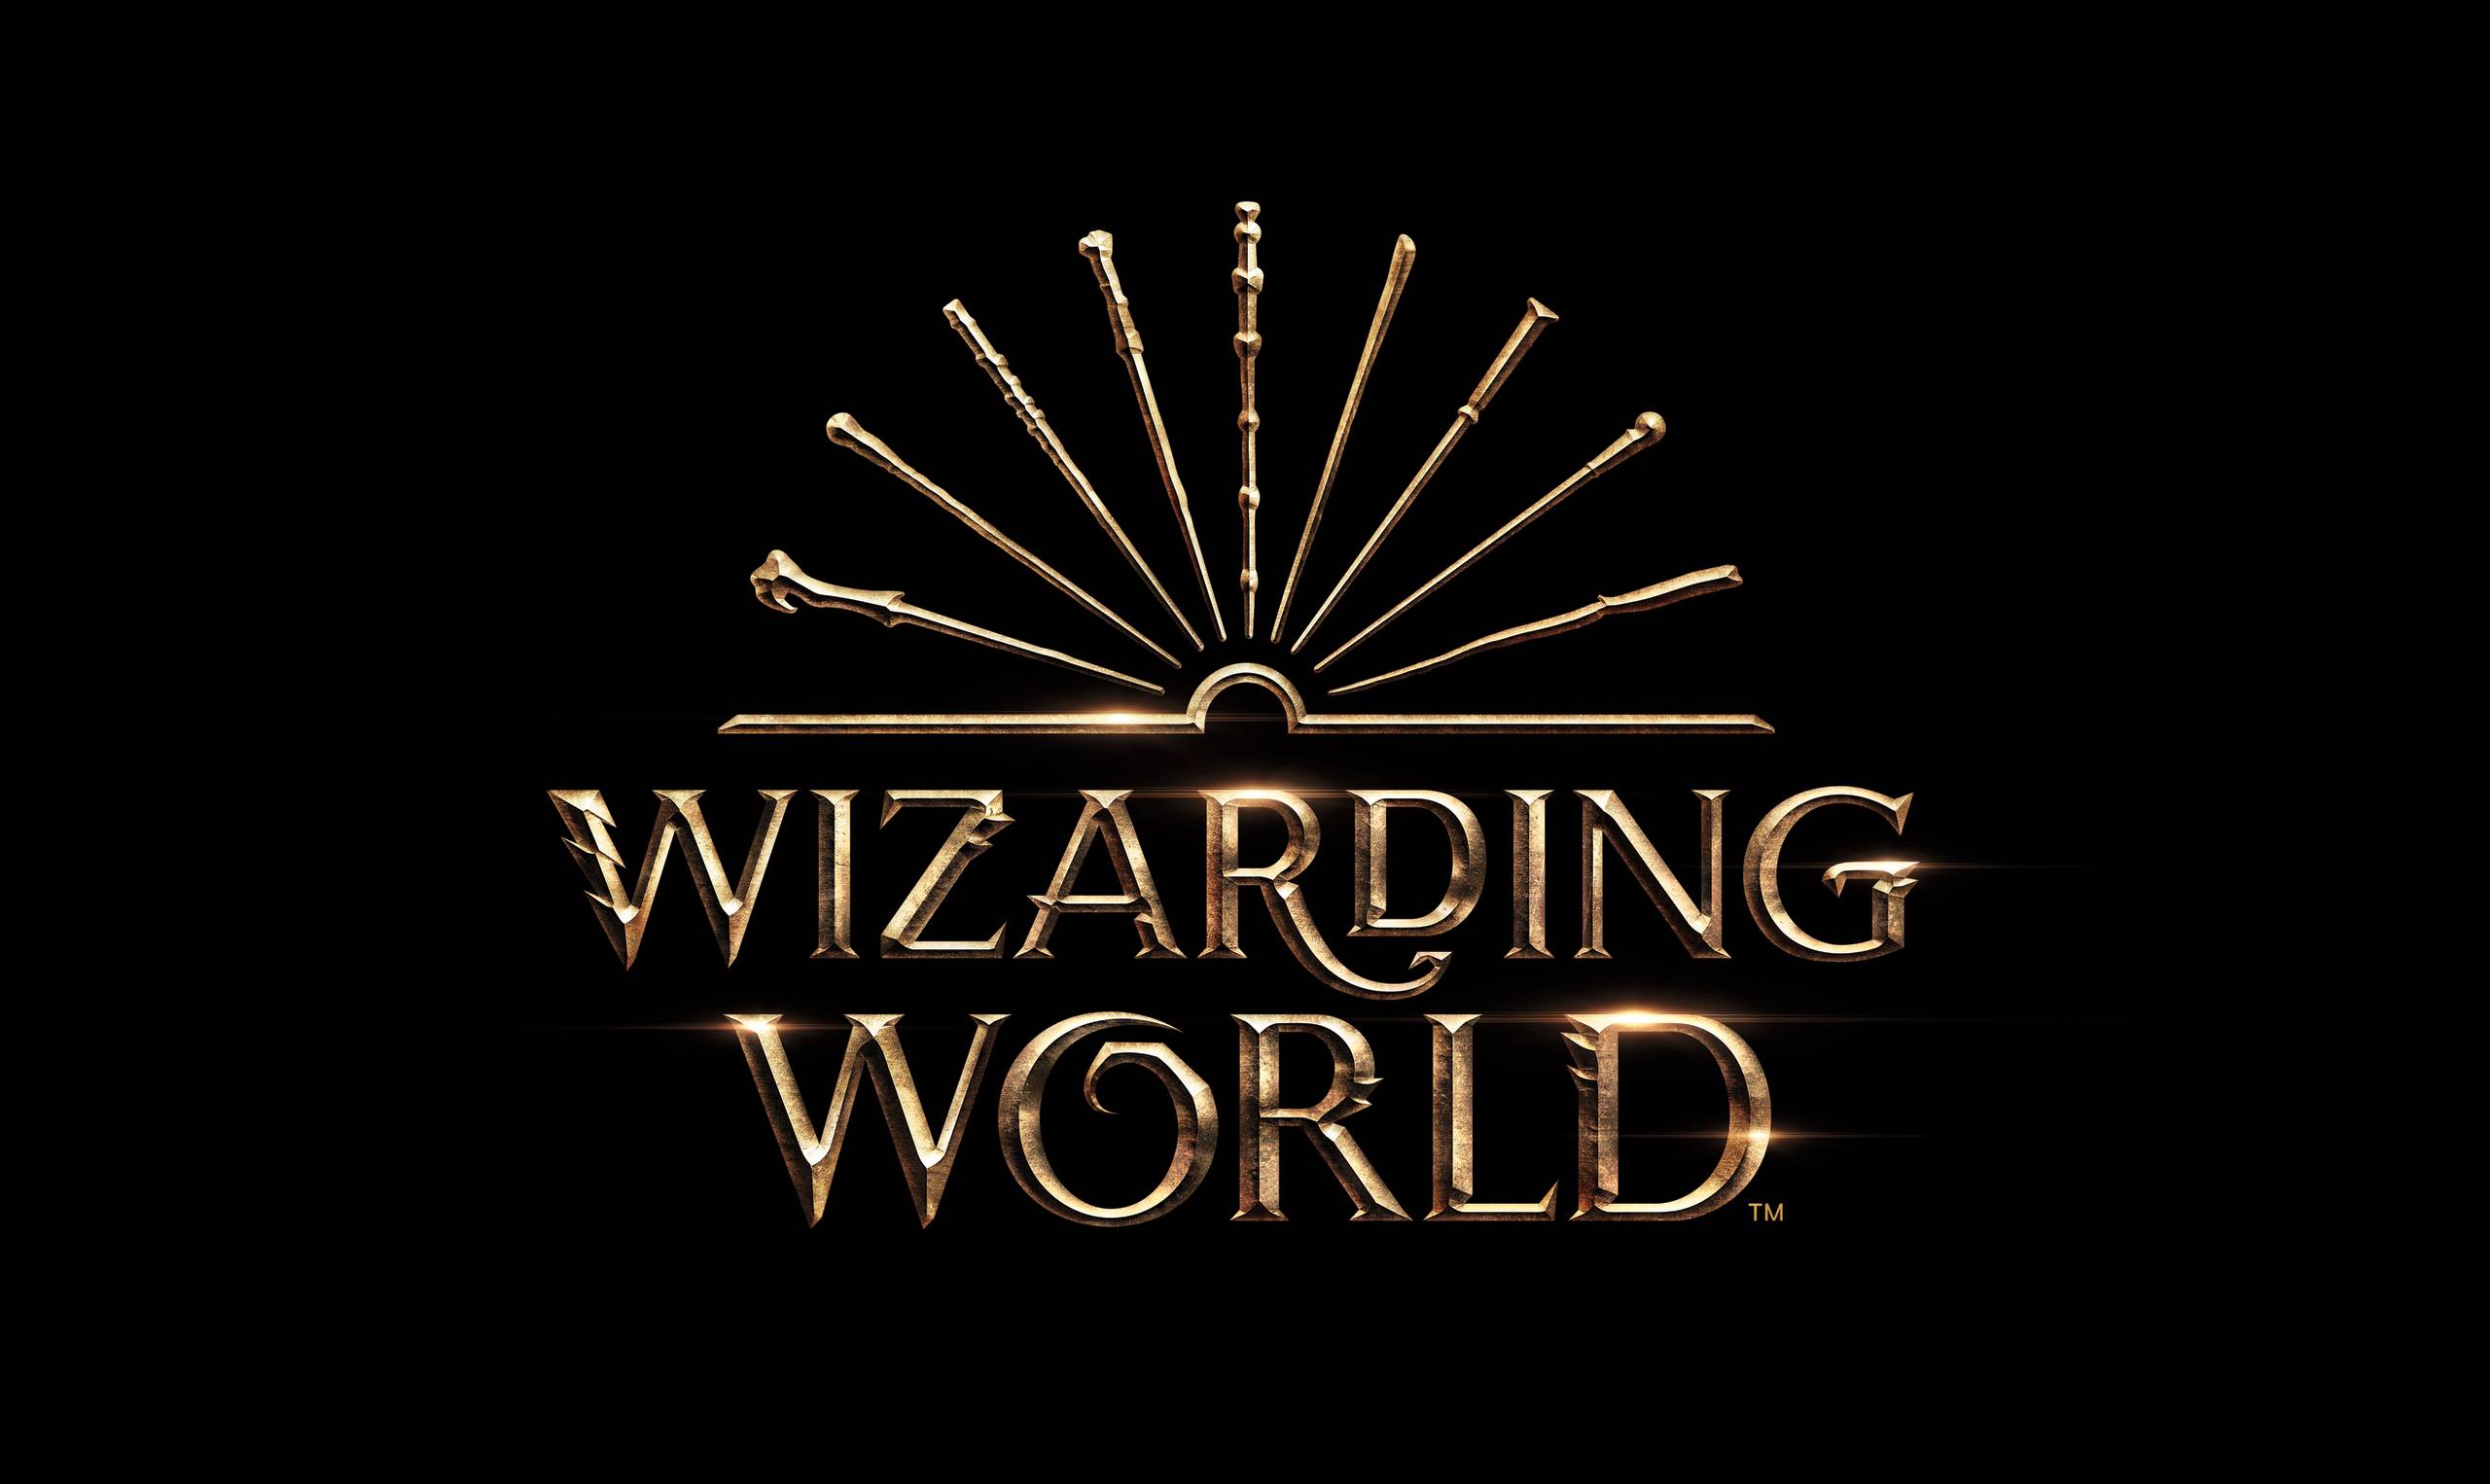 New logo design for Wizarding World